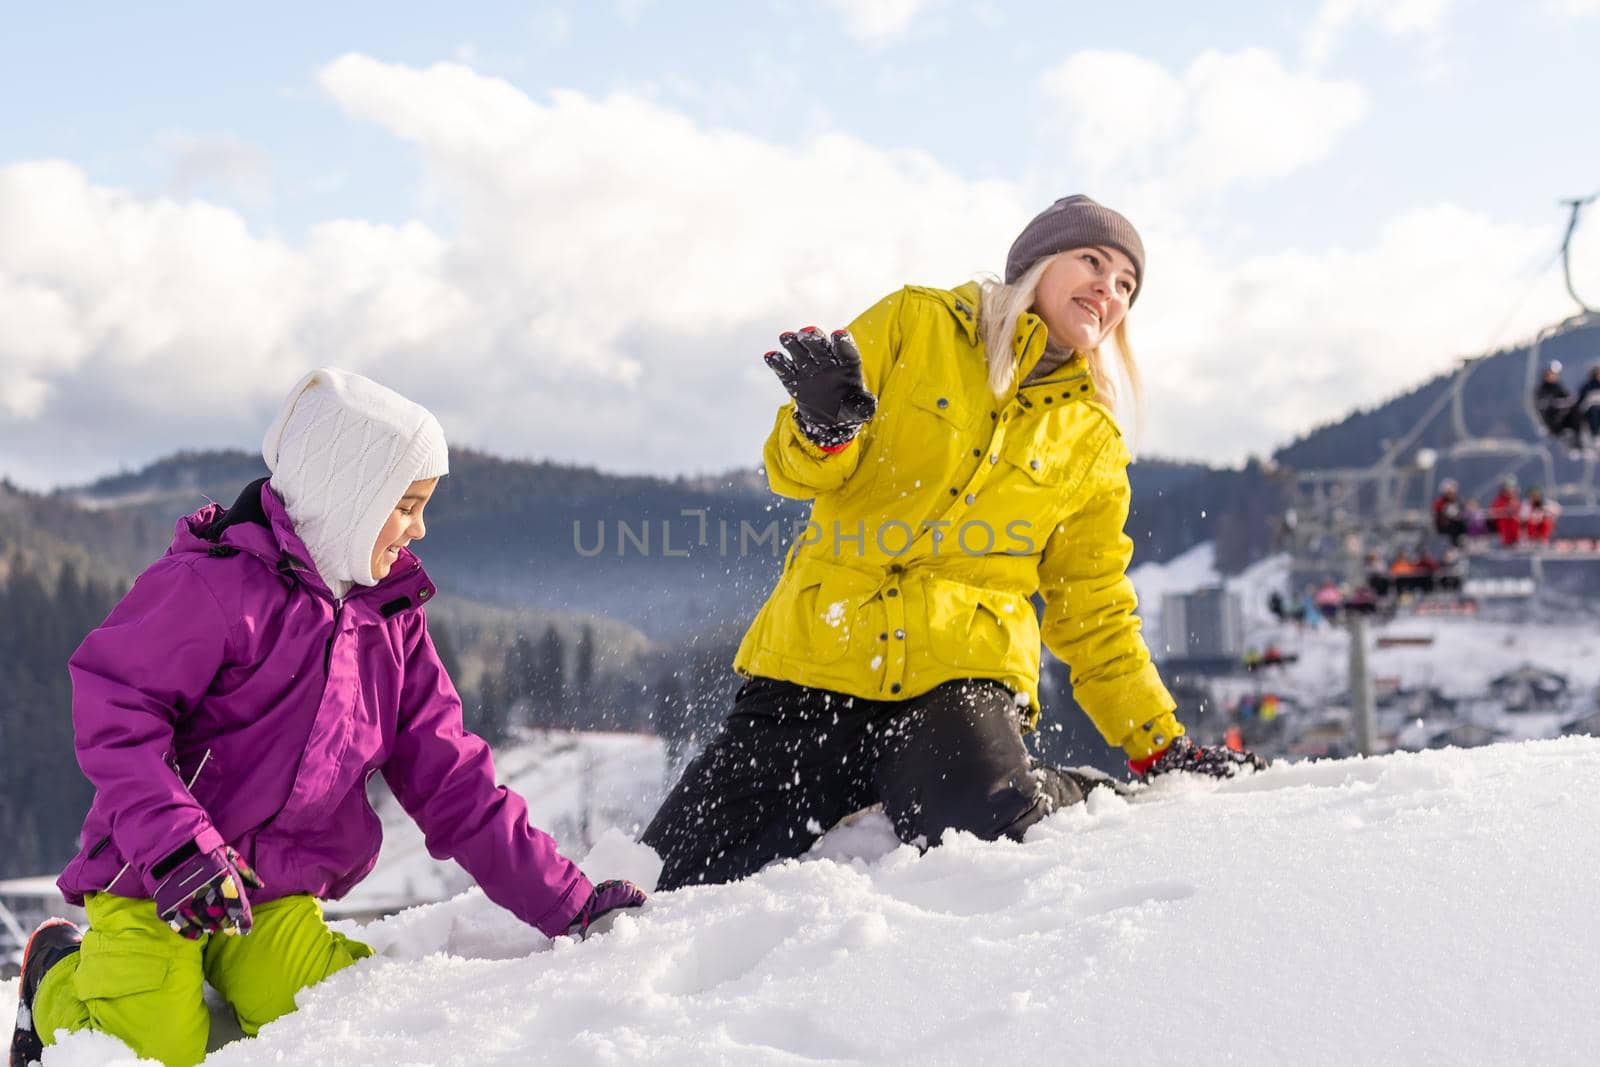 Family winter vacation in ski resort by Andelov13